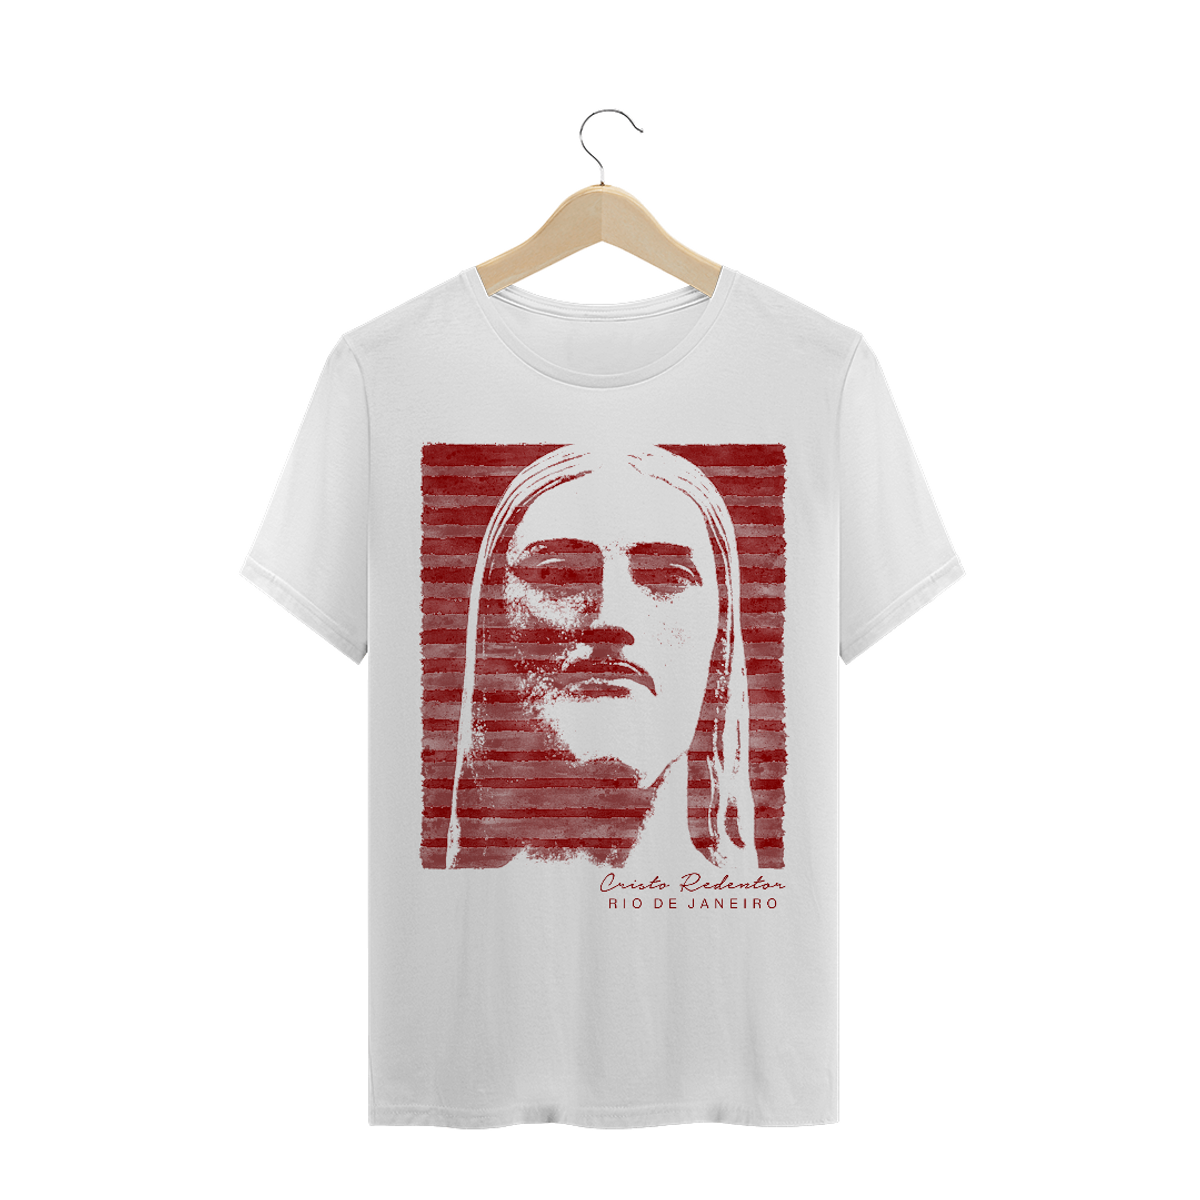 Nome do produto: Camiseta Masculina Cristo Redentor listras vermelhas